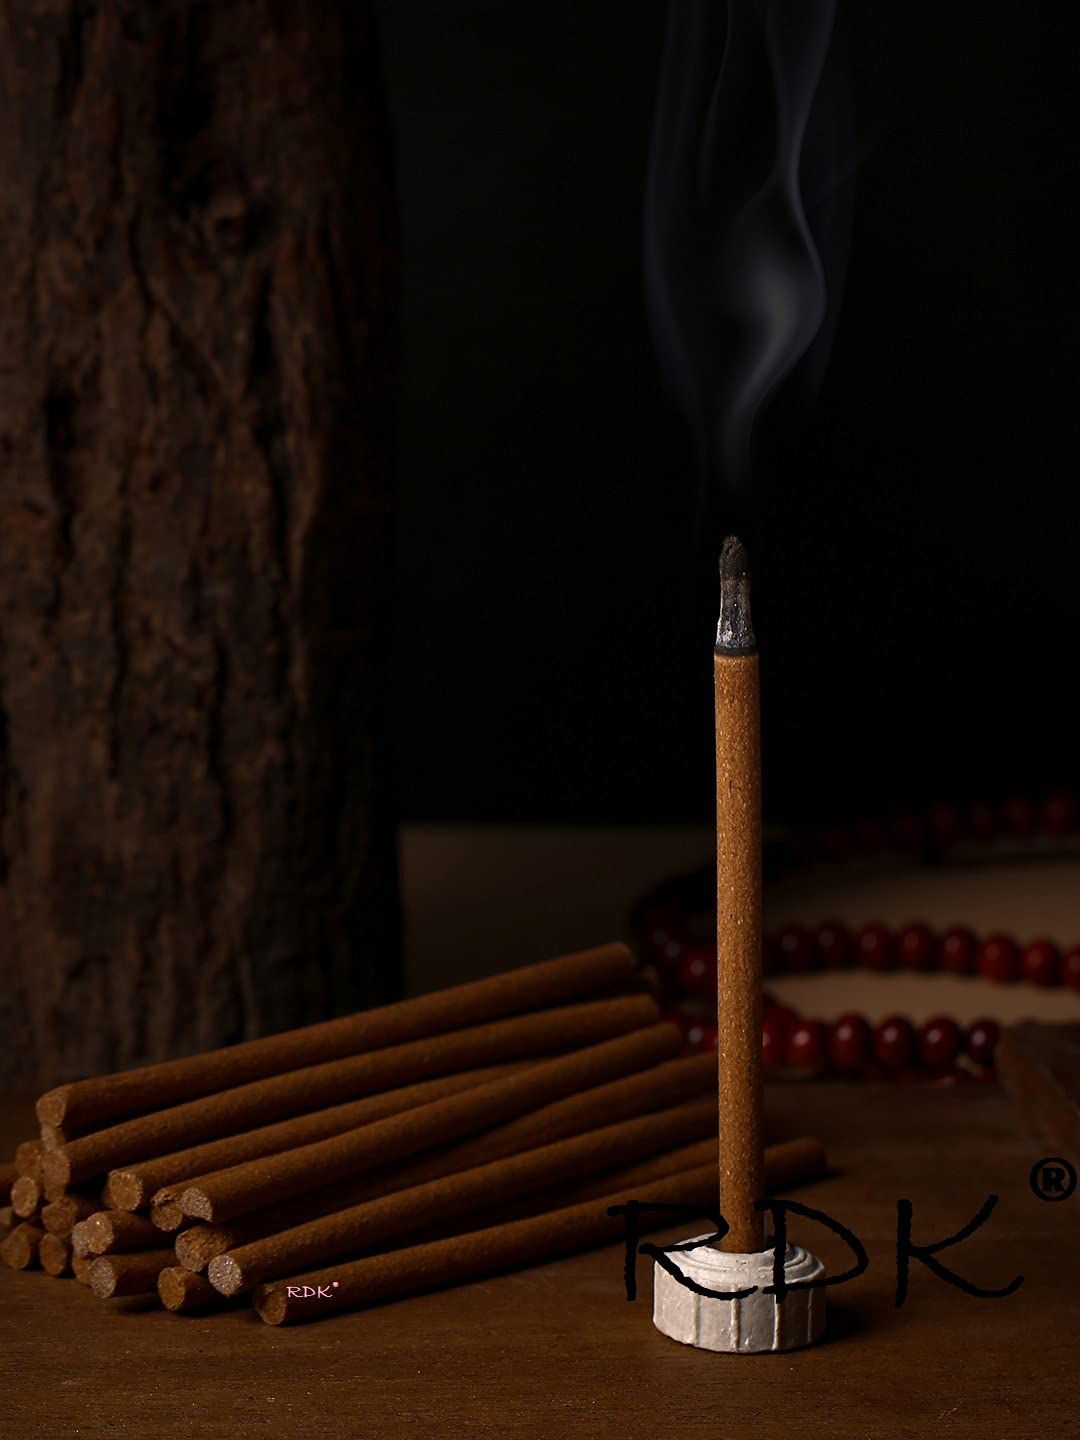 RDK Set of 200 Gms Beige Colored Natural Kasturi Fragrance Incense Sticks Price in India